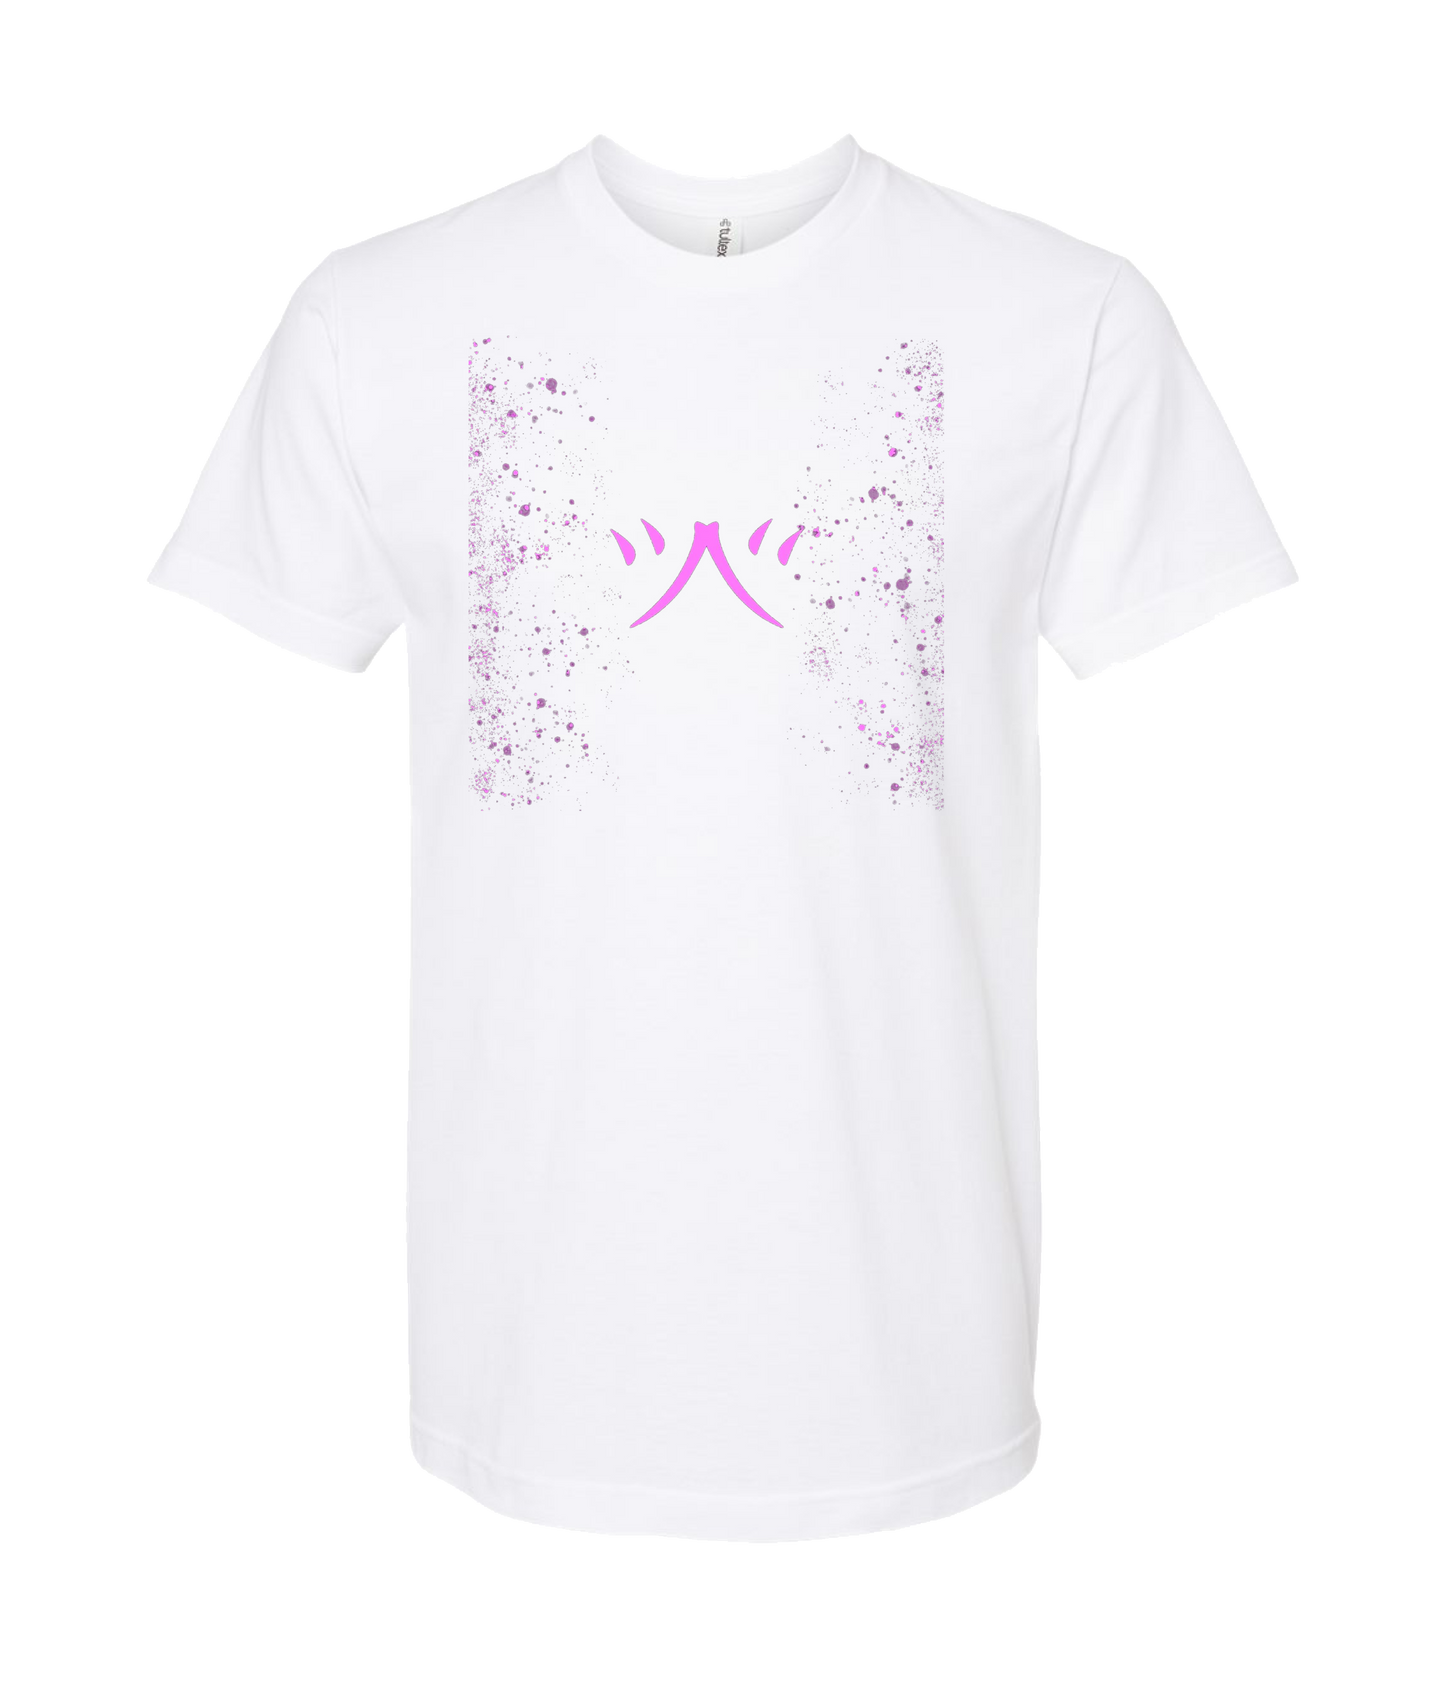 atomicclothing.com - Pink Splatter - White T Shirt